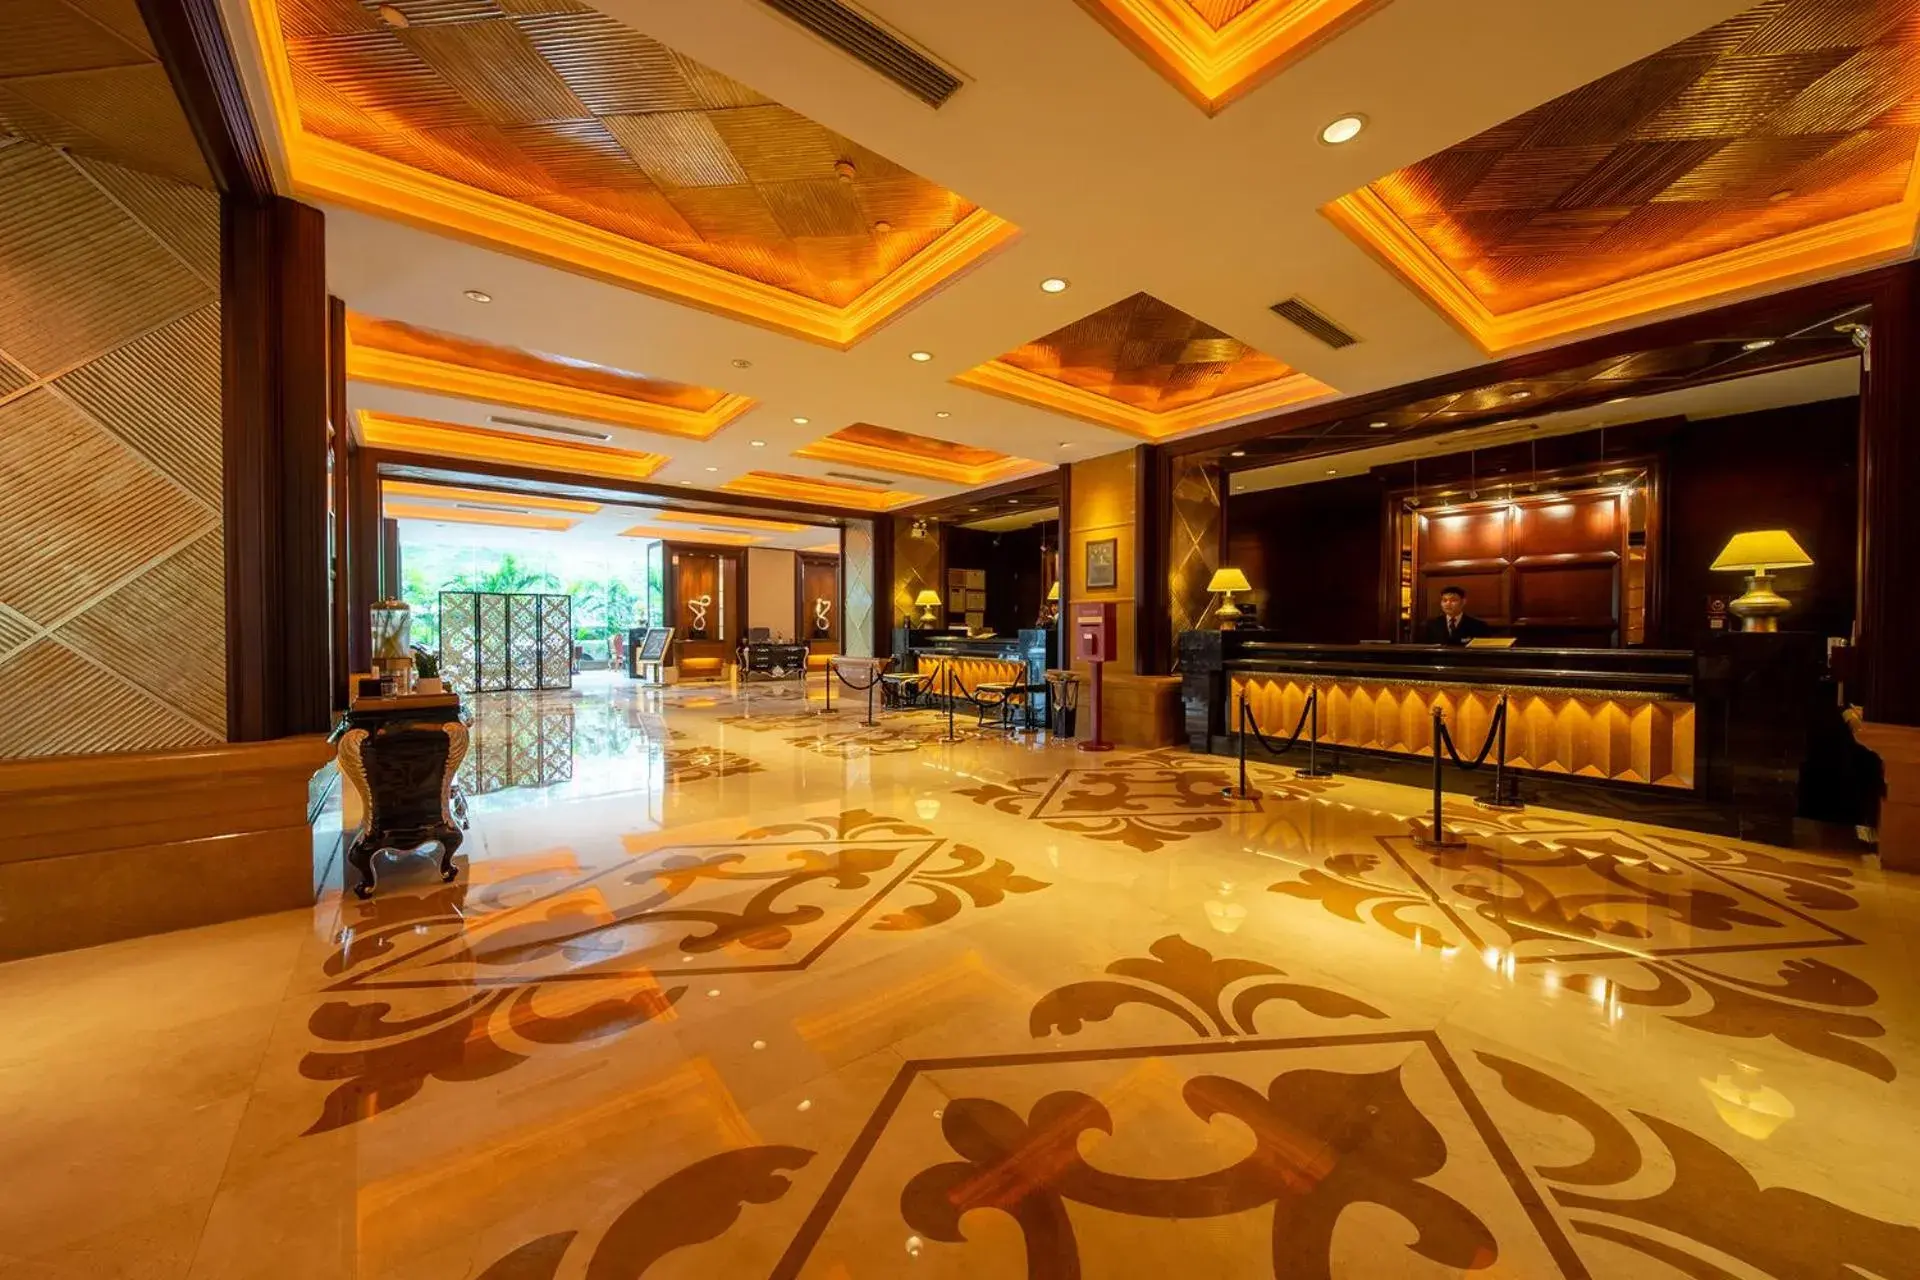 Lobby or reception, Lobby/Reception in Grand International Hotel